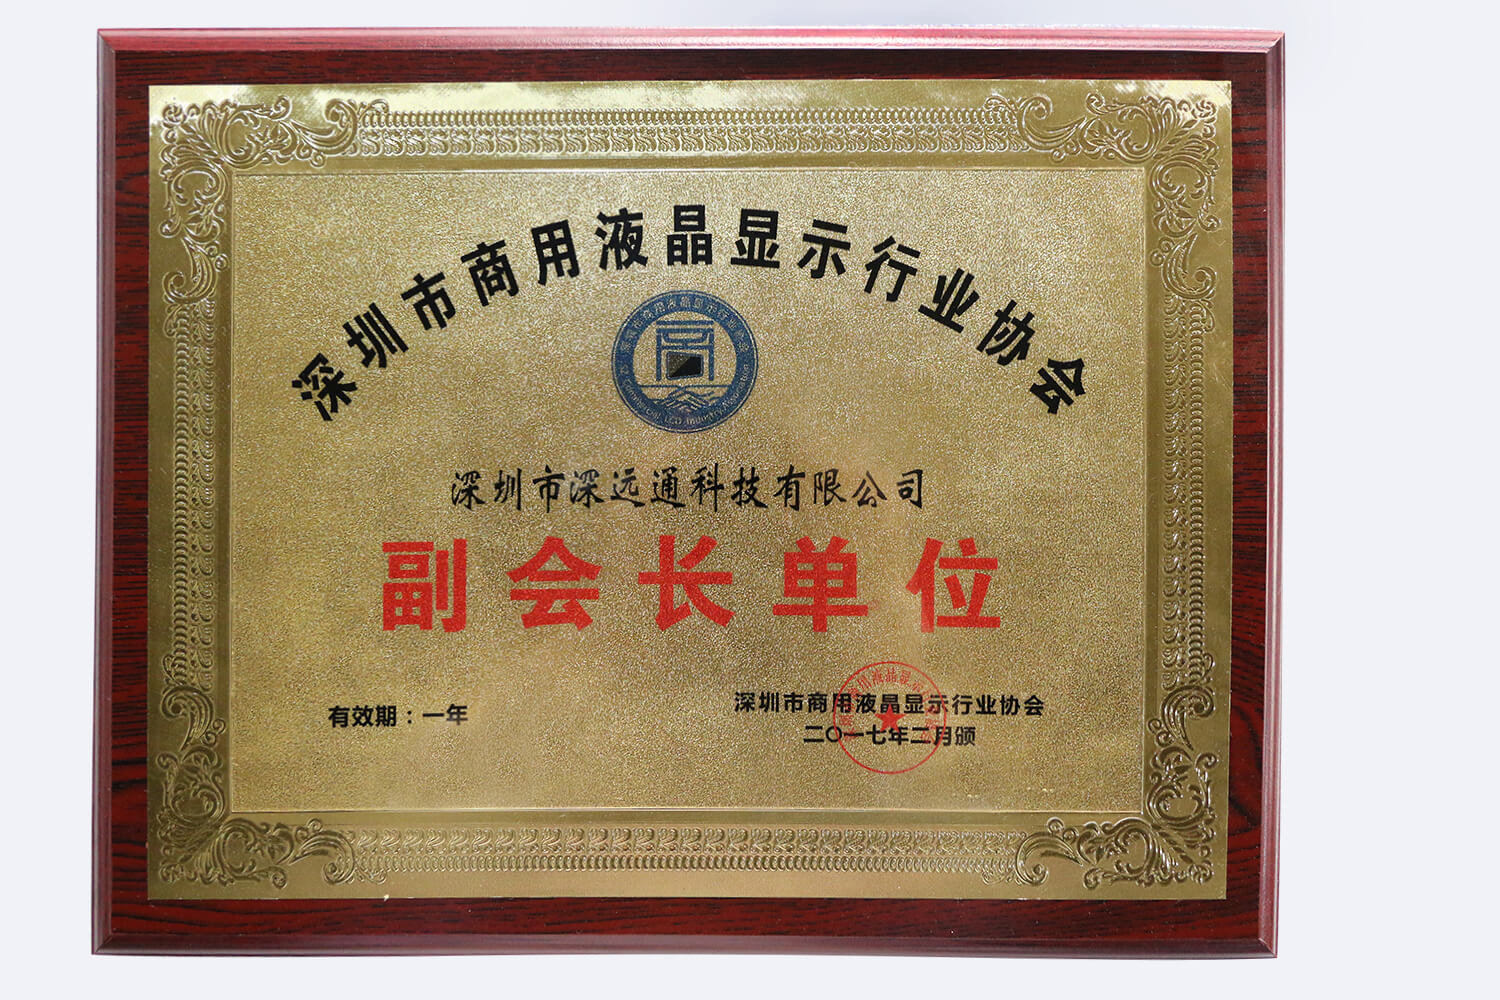 深圳市商用液晶顯示行業協會副會長單位